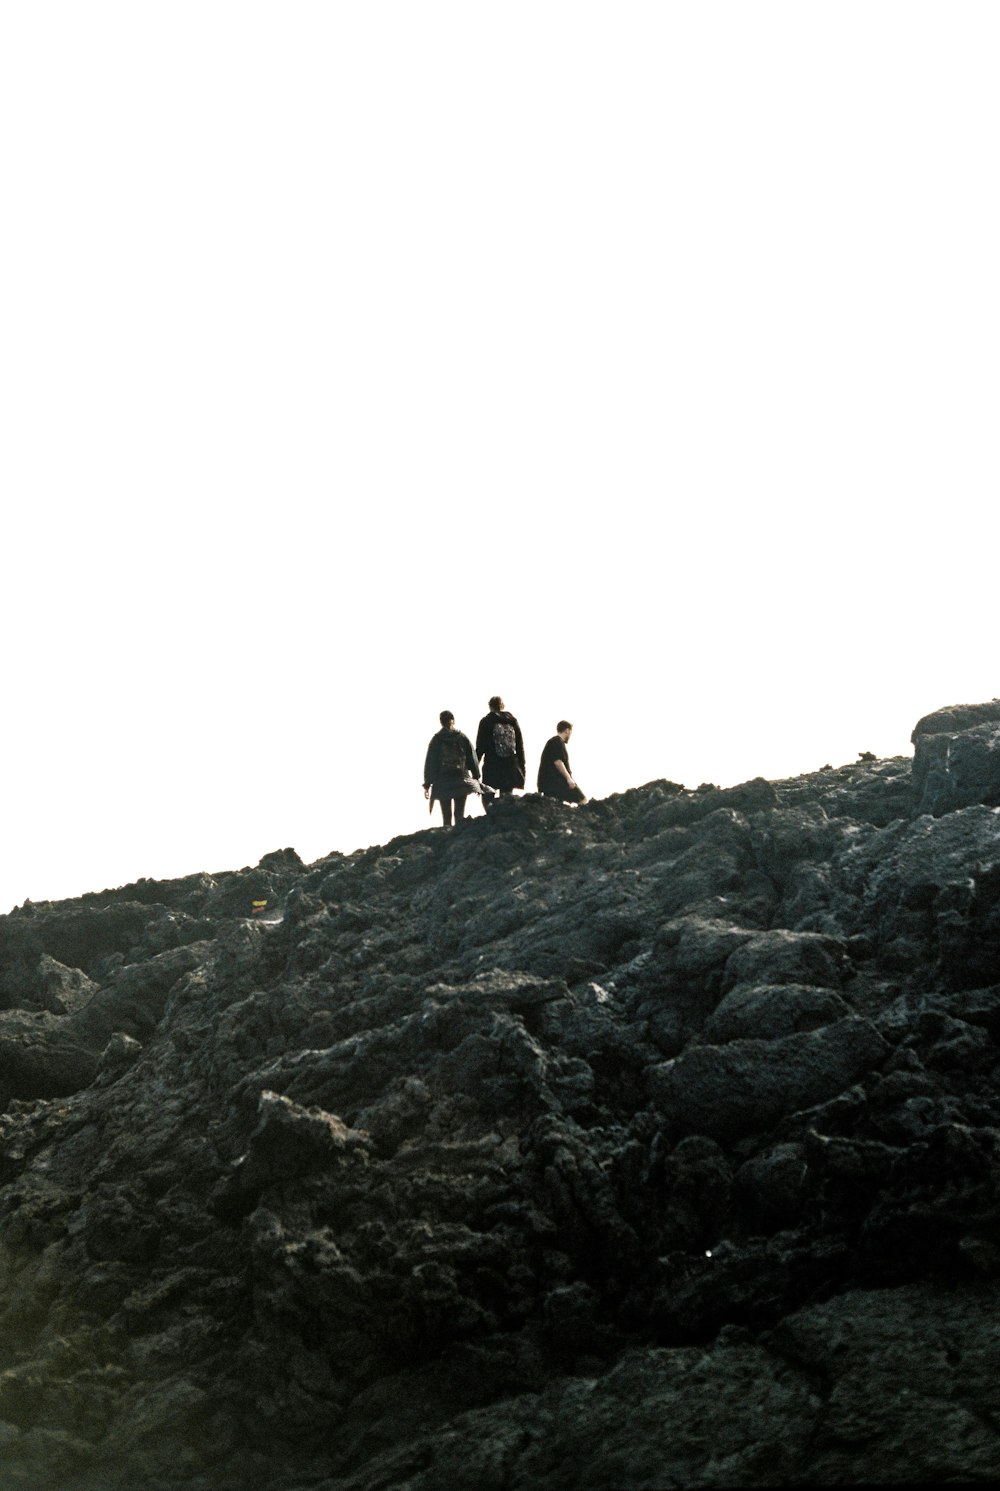 Un grupo de personas sentadas en la cima de una colina rocosa